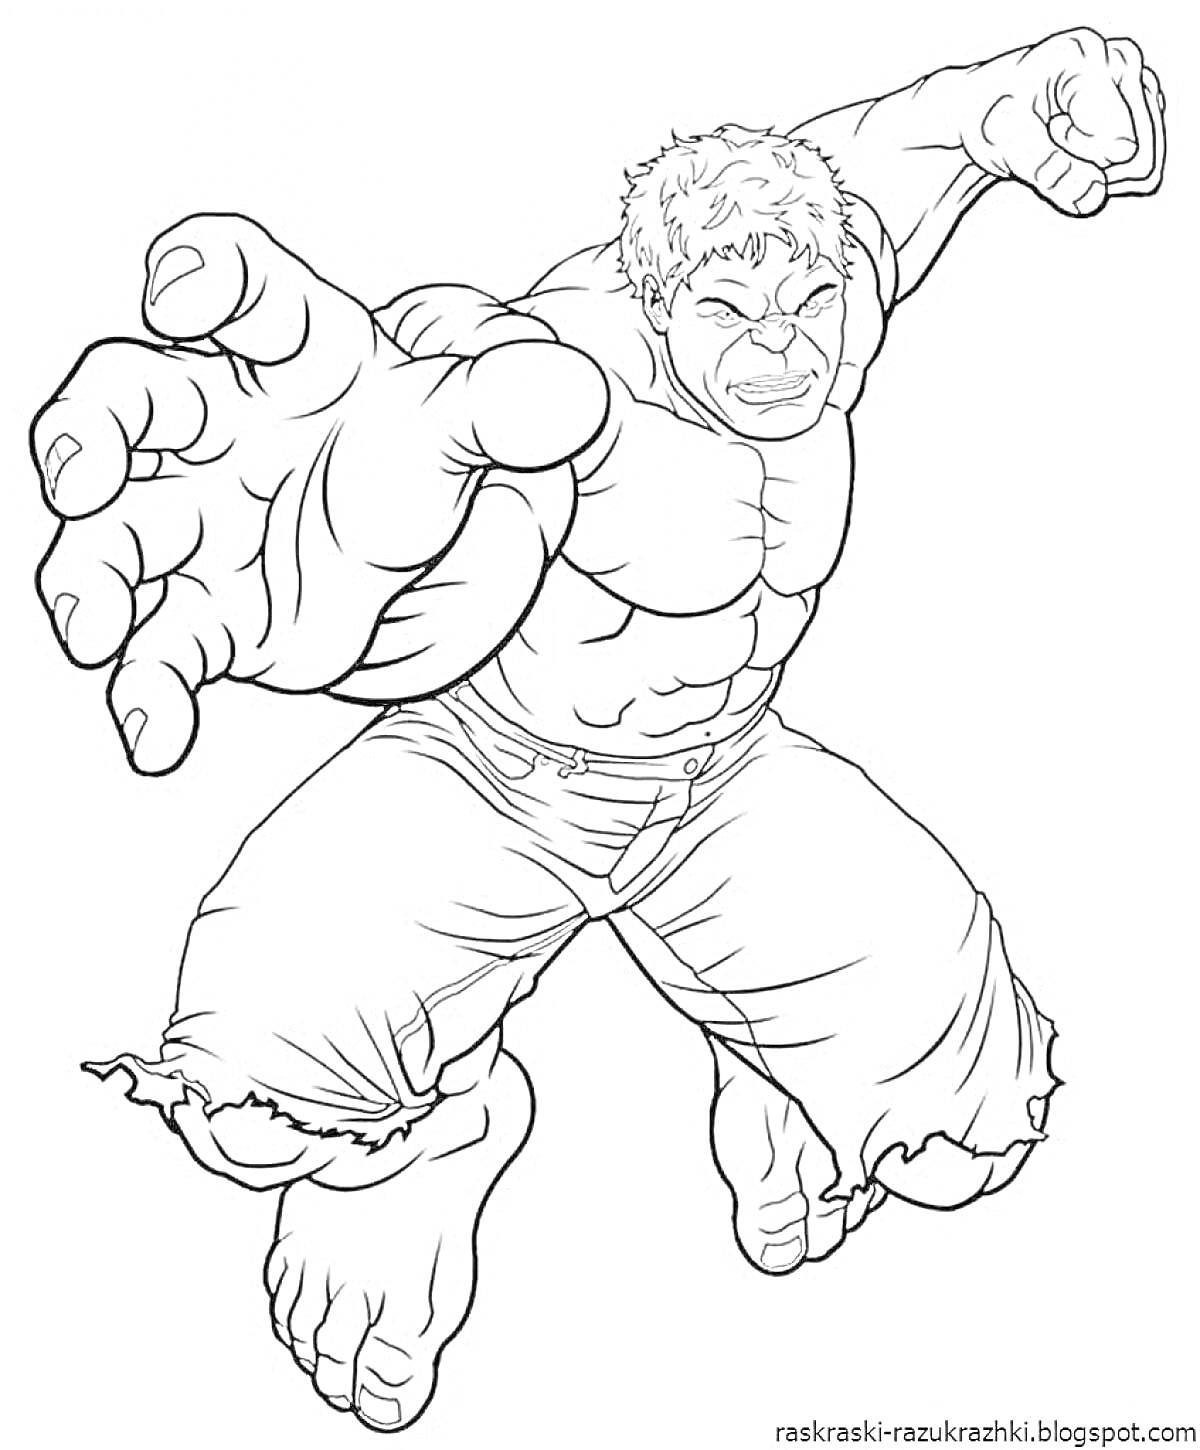 Раскраска Халк в прыжке с вытянутыми руками и разорванными штанами